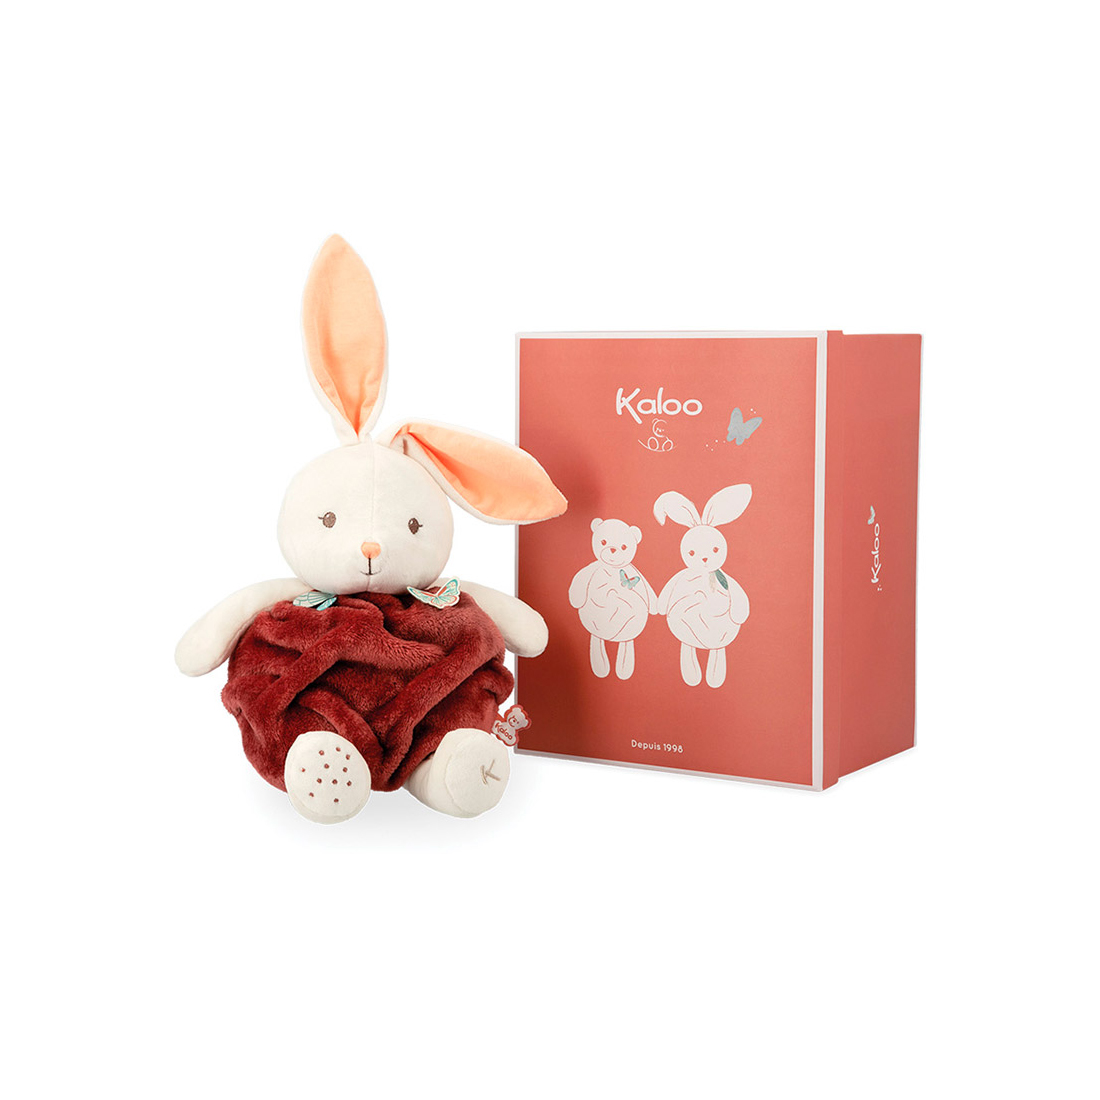 Мягкая игрушка Kaloo "Кролик Buble of Love", серия "Plume", корица, 30 см - фото №1